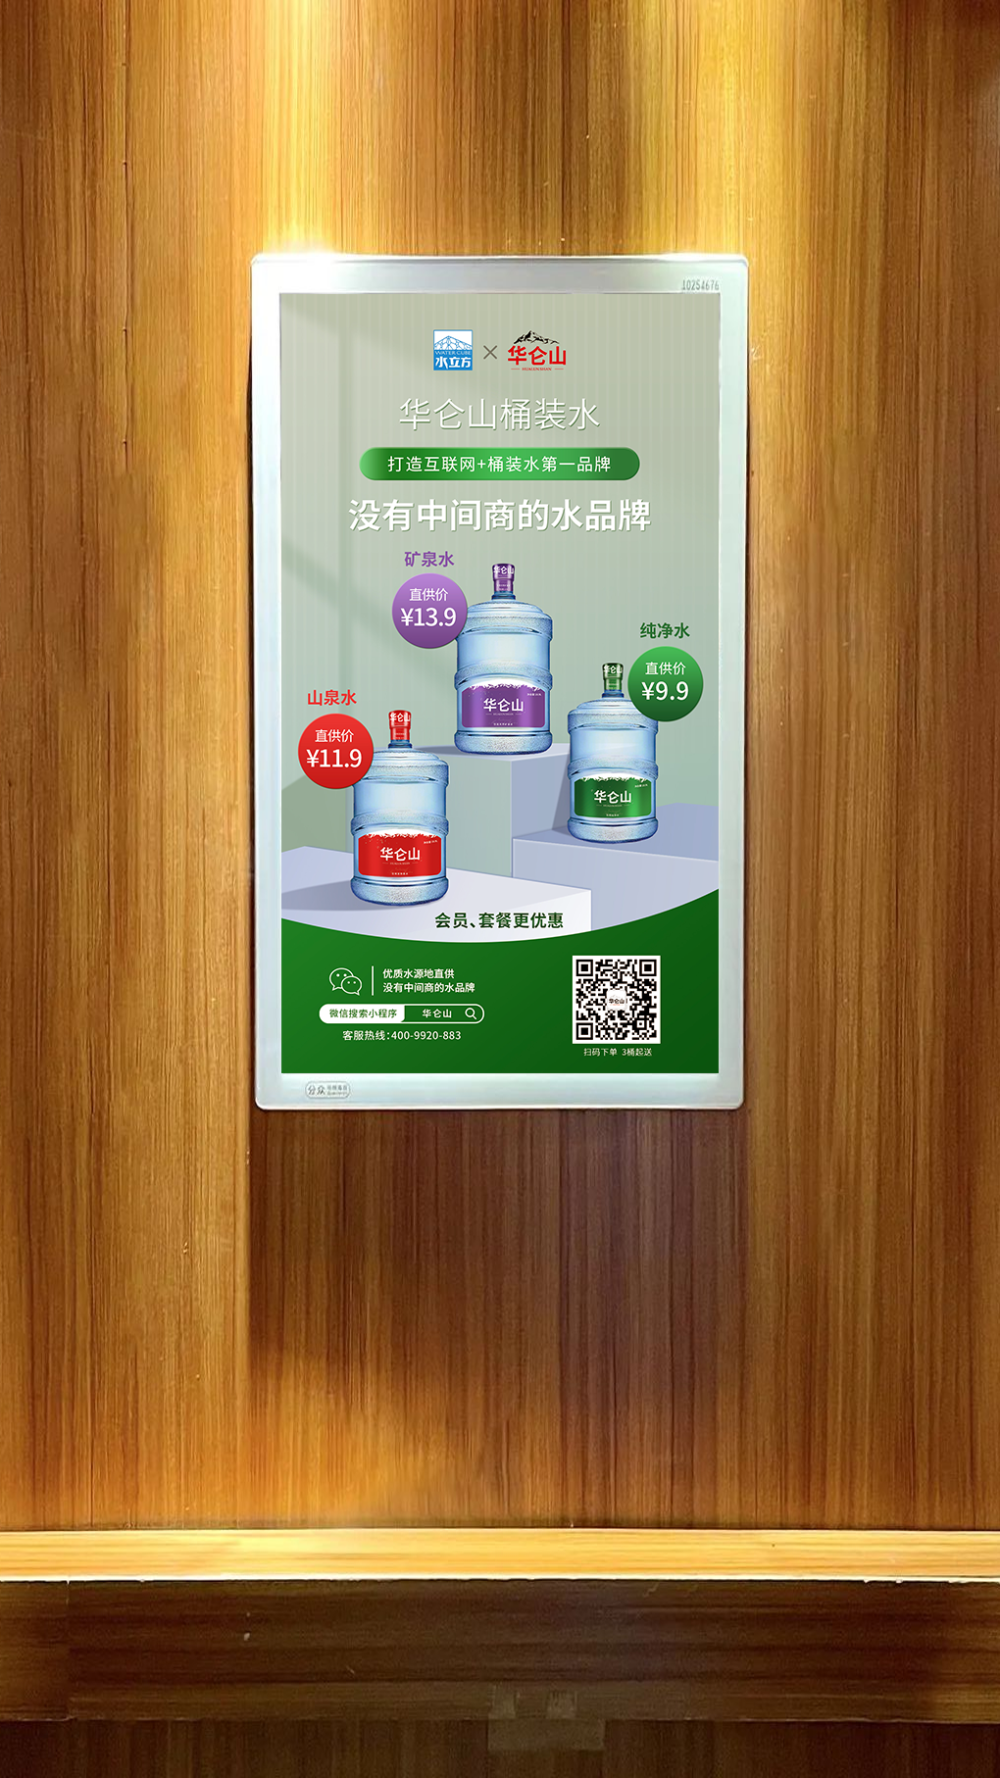 华仑山&上市公司分众传媒达成战略合作,打造互联网桶装水“第一品牌”!